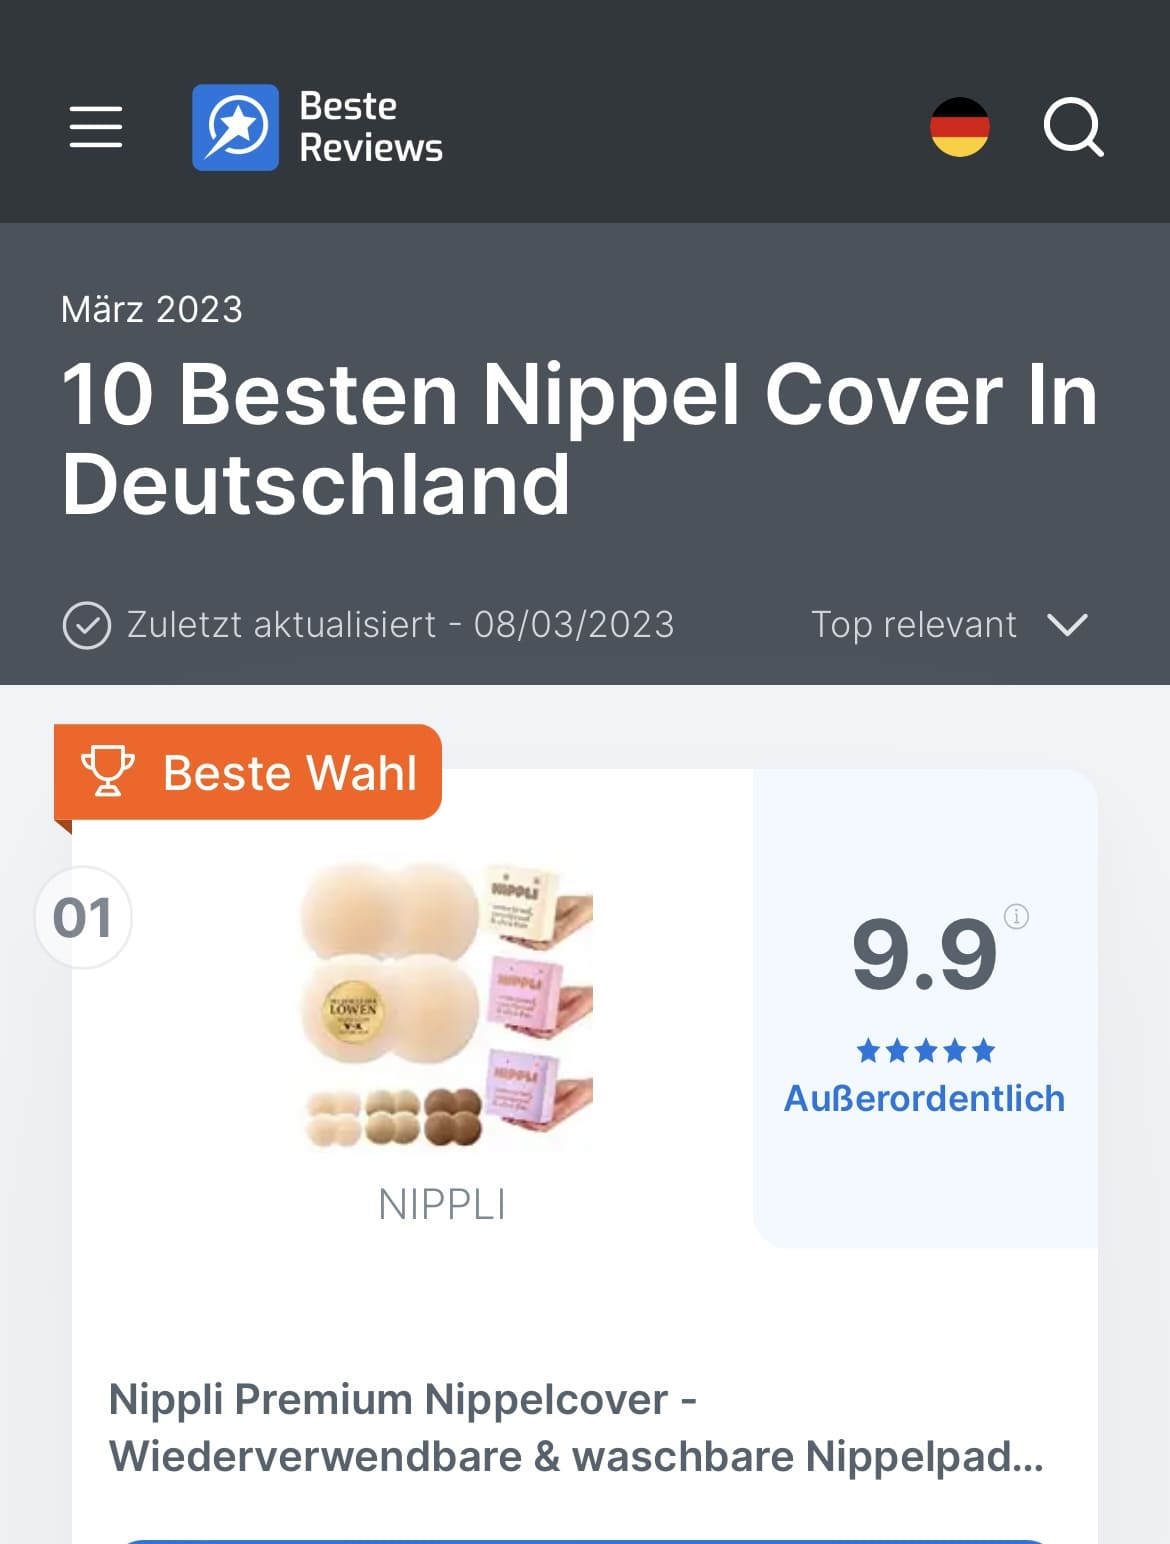 Nippli ist die beste Nippelcover Marke Deutschlands